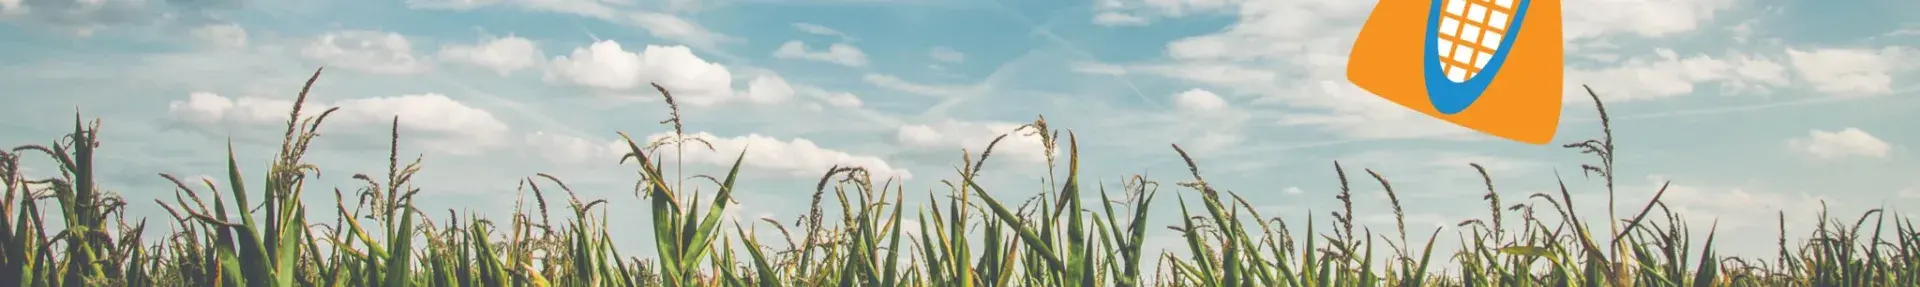 Image: green field, blue sky, cartoon lab vial in the sky. Topic: Genetic Engineering